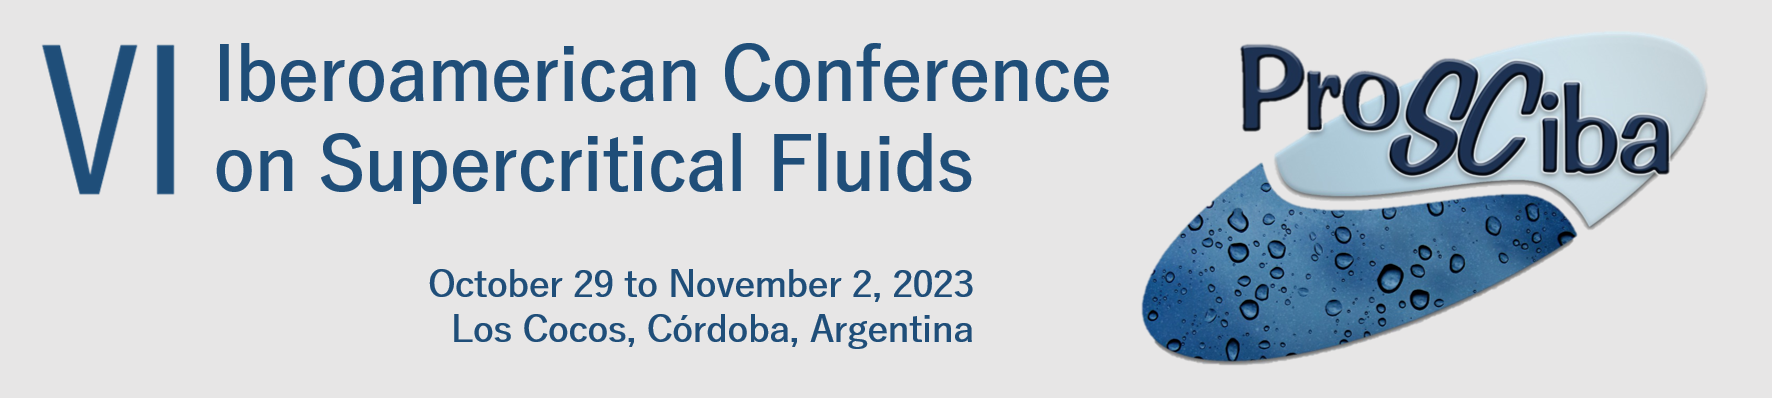 VI Iberoamerican Conference on Supercritical Fluids Logo